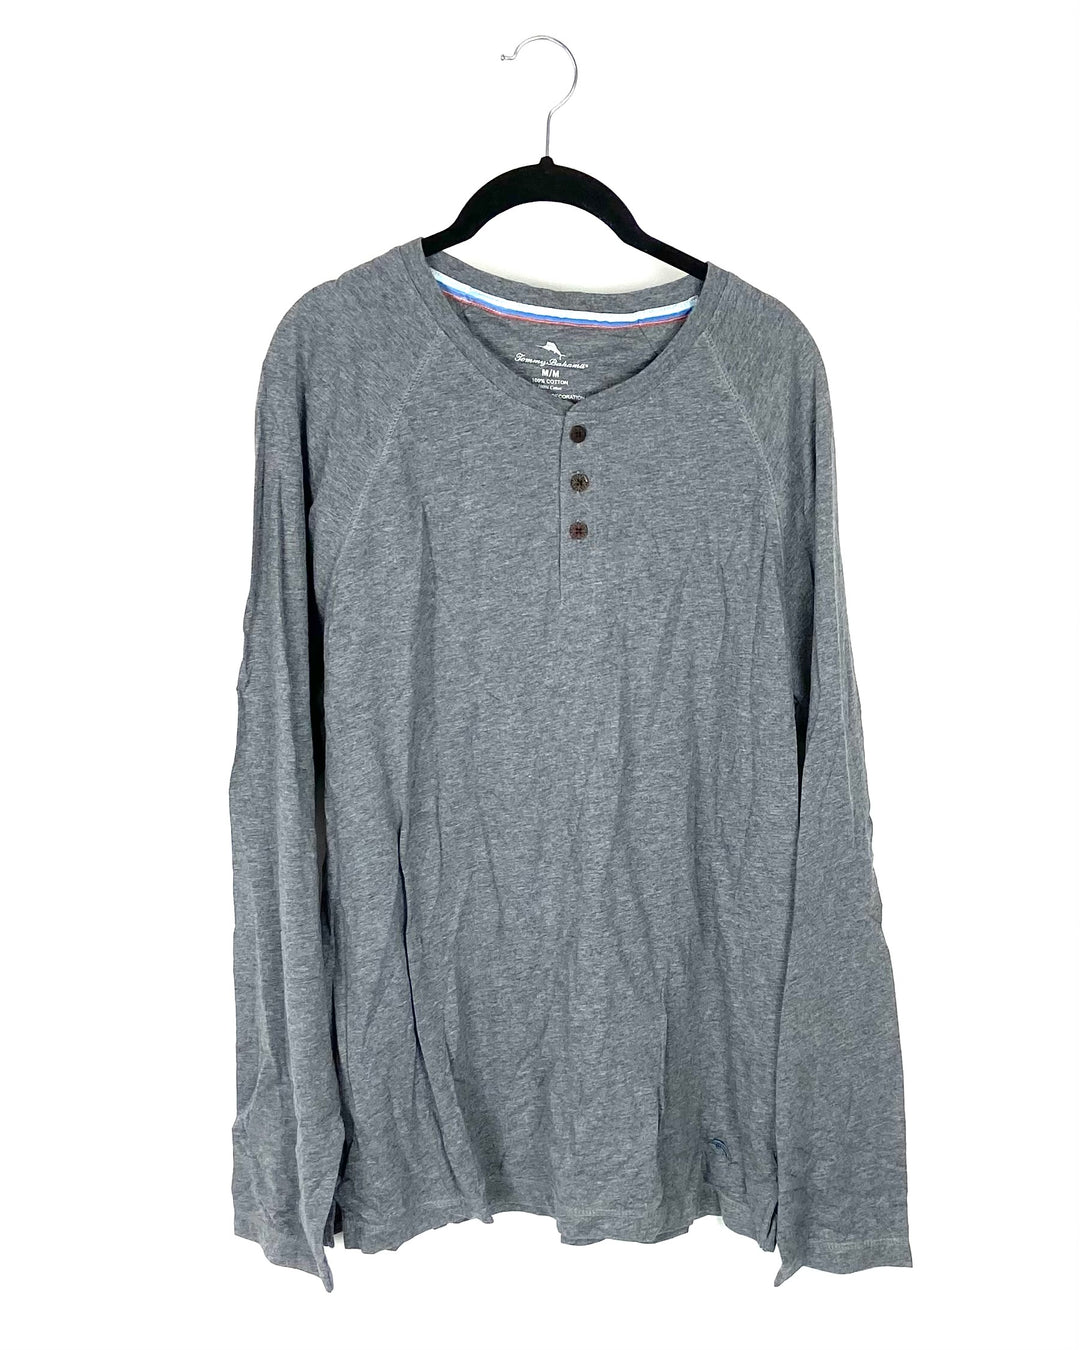 MENS Gray Long-Sleeved Shirt - Medium